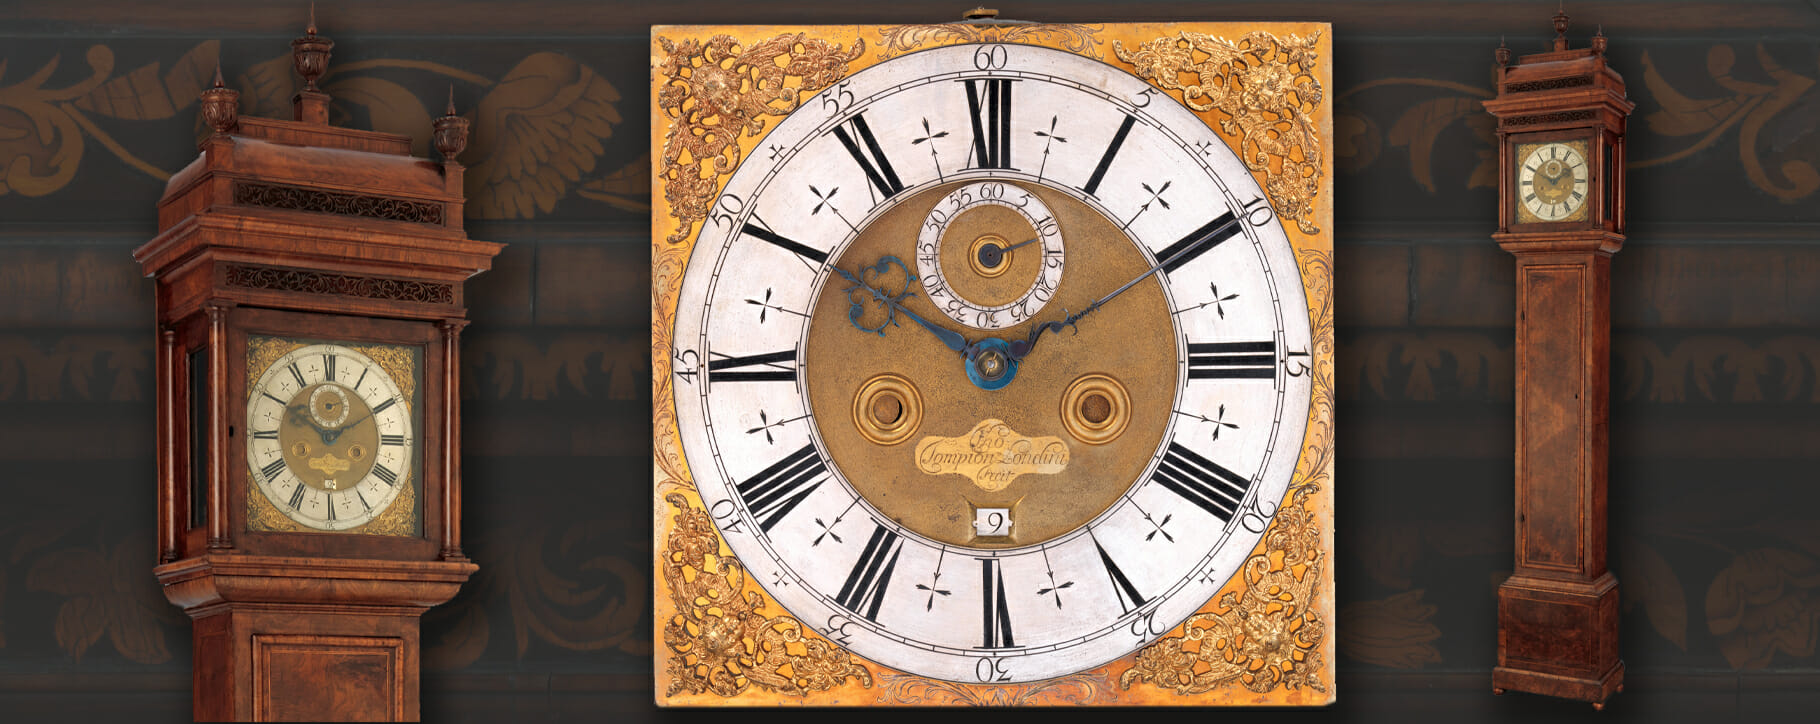 1700 longcase clock